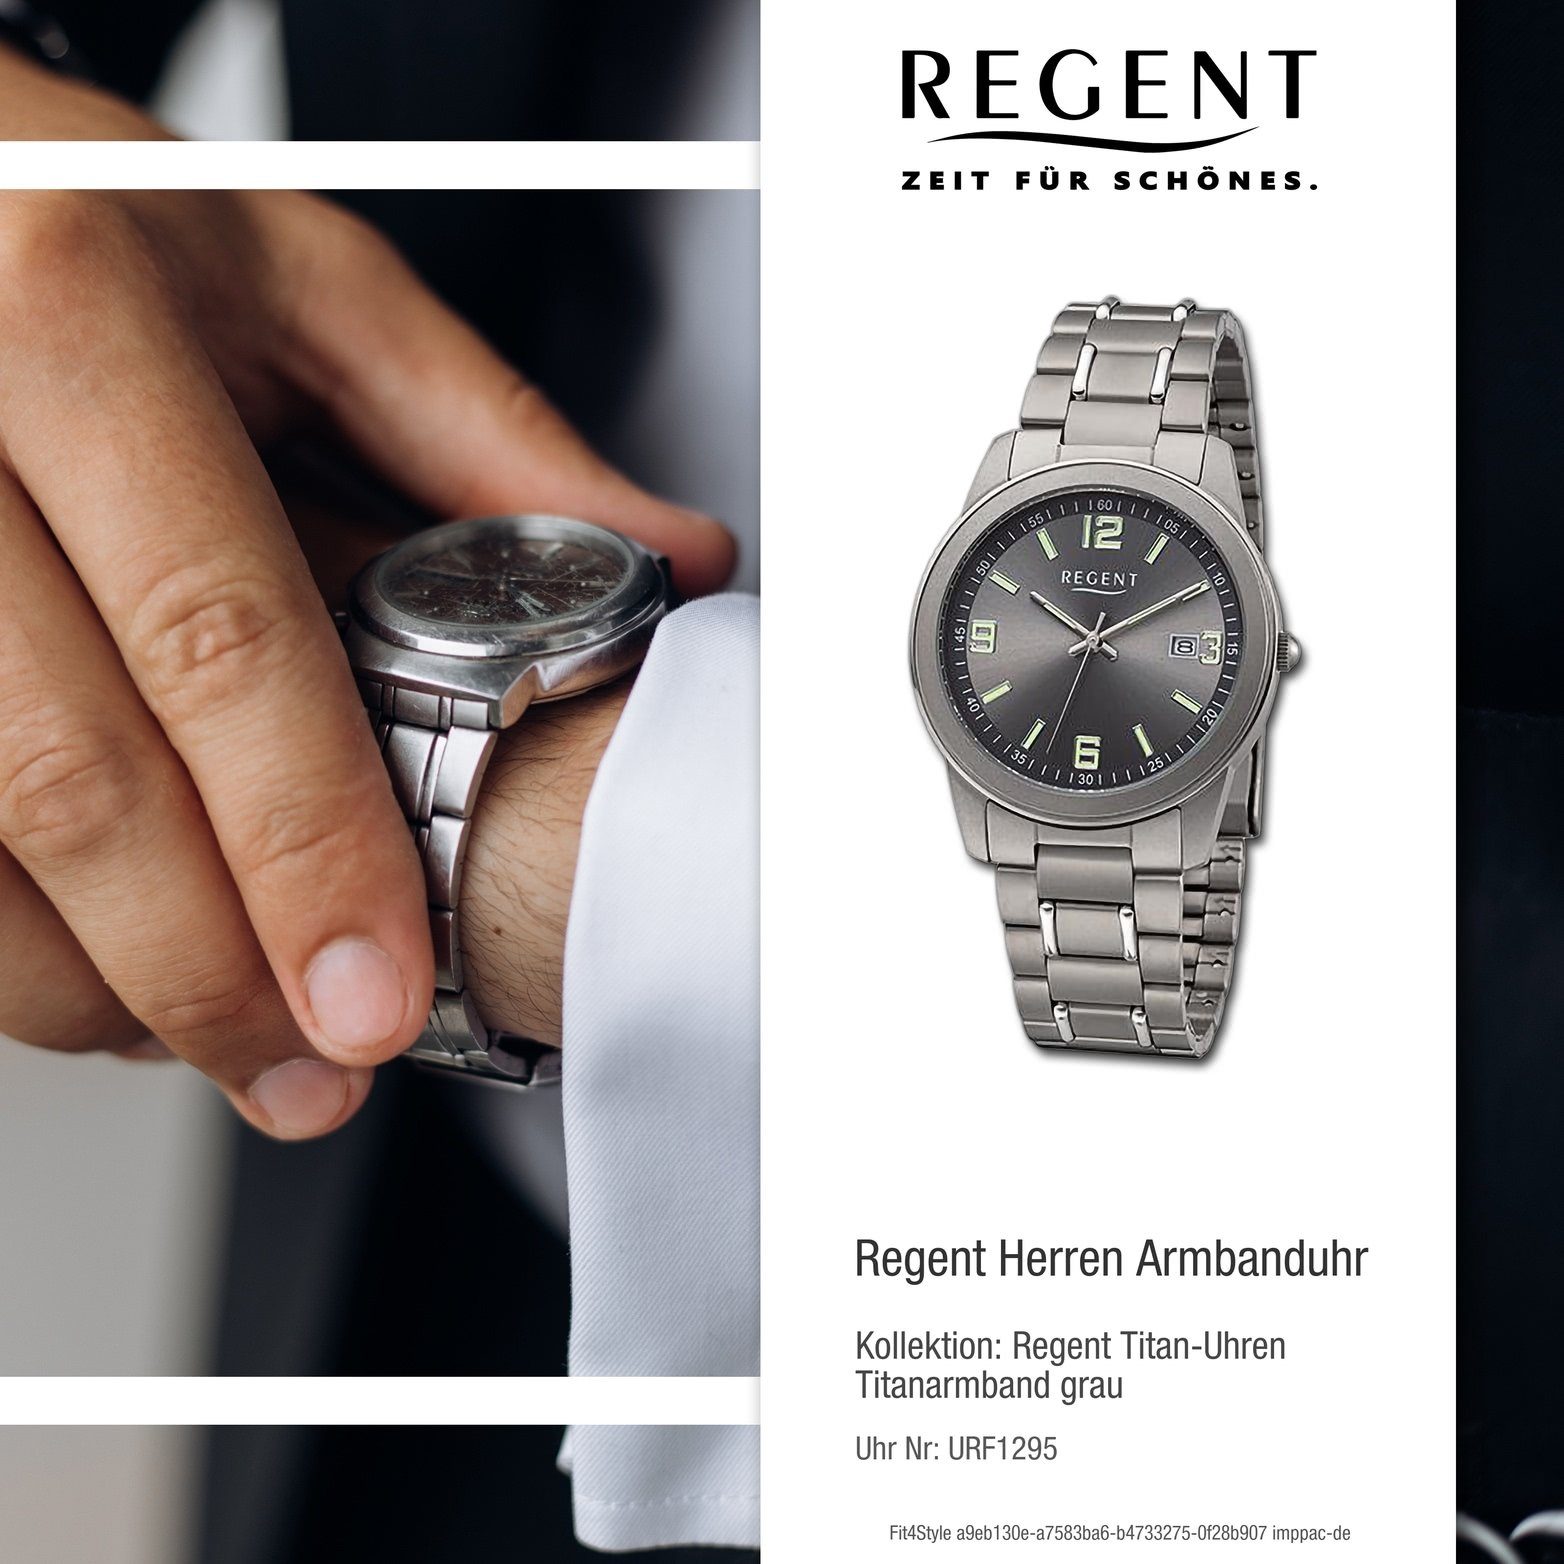 Herren Armbanduhr Herrenuhr rundes (ca. Gehäuse, Regent Quarzuhr Titanarmband groß Regent grau, Analog, 38mm) silber,